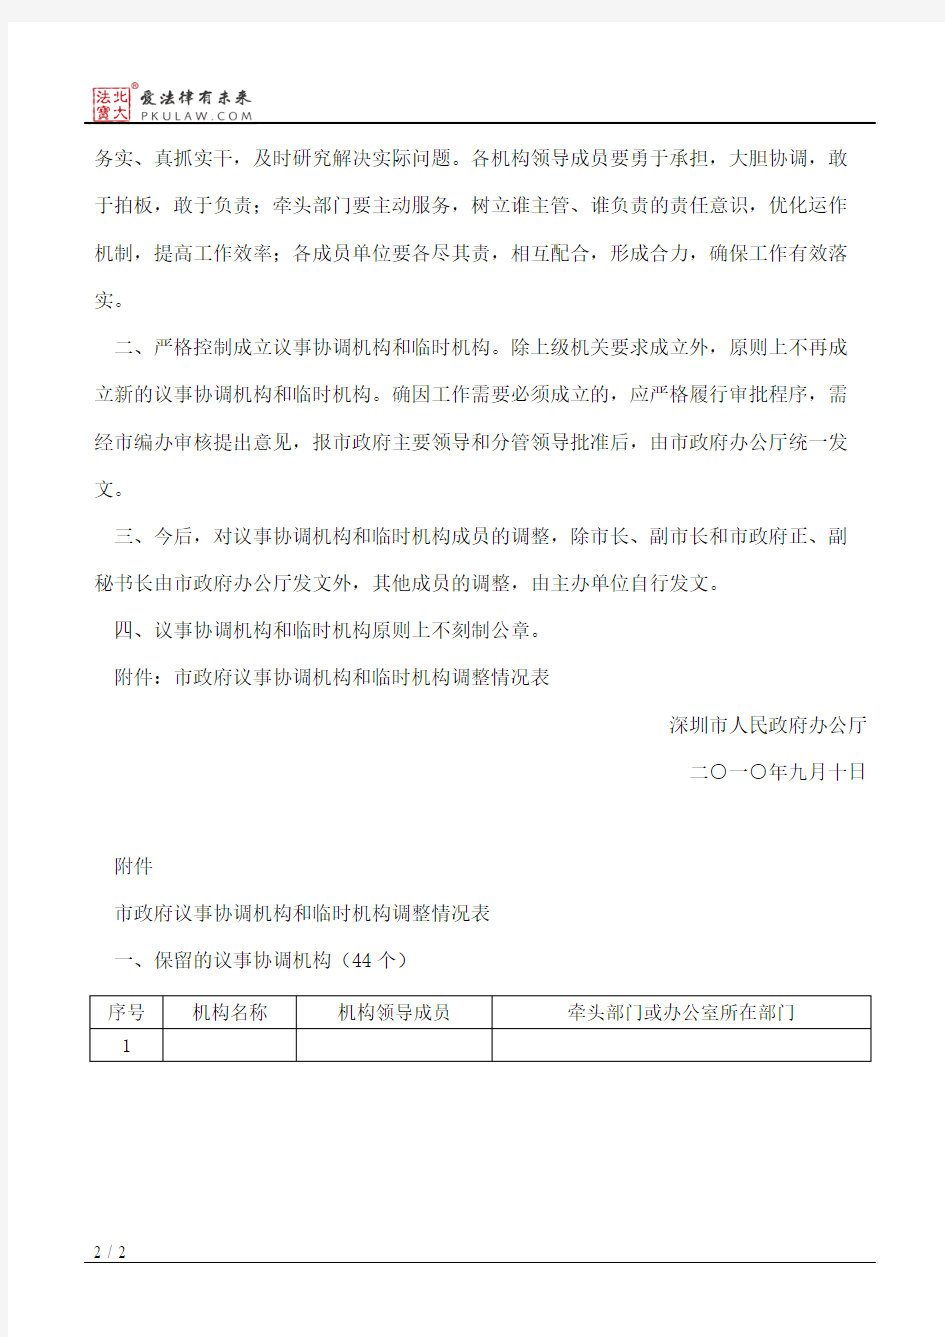 深圳市人民政府办公厅关于调整市政府议事协调机构和临时机构及领